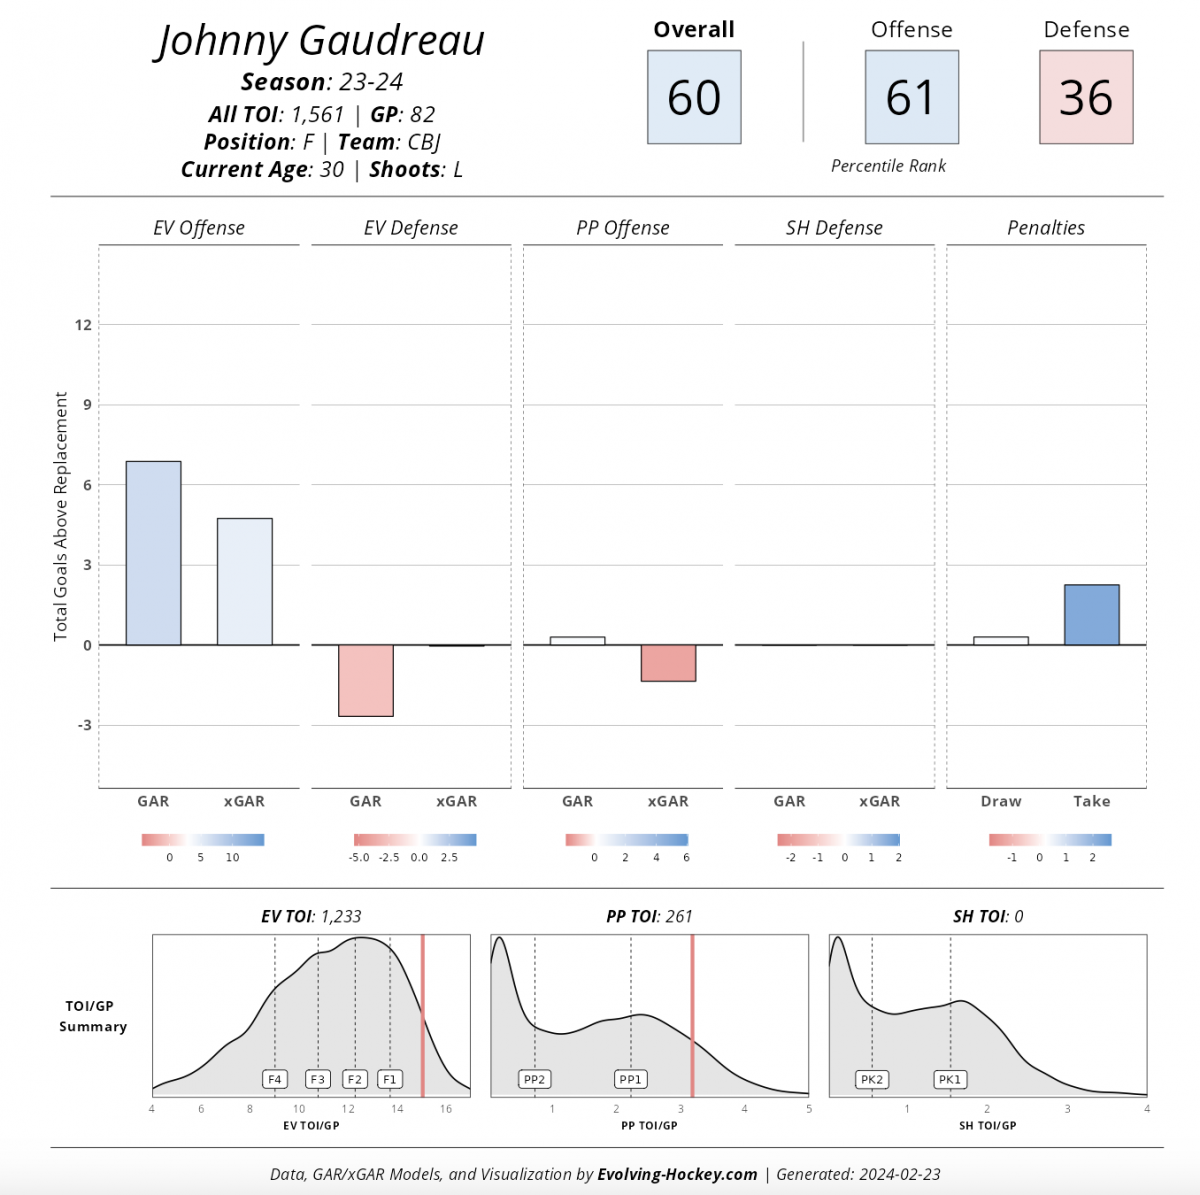 Johnny Gaudreau '23-'24 player card, evolving-hockey.com